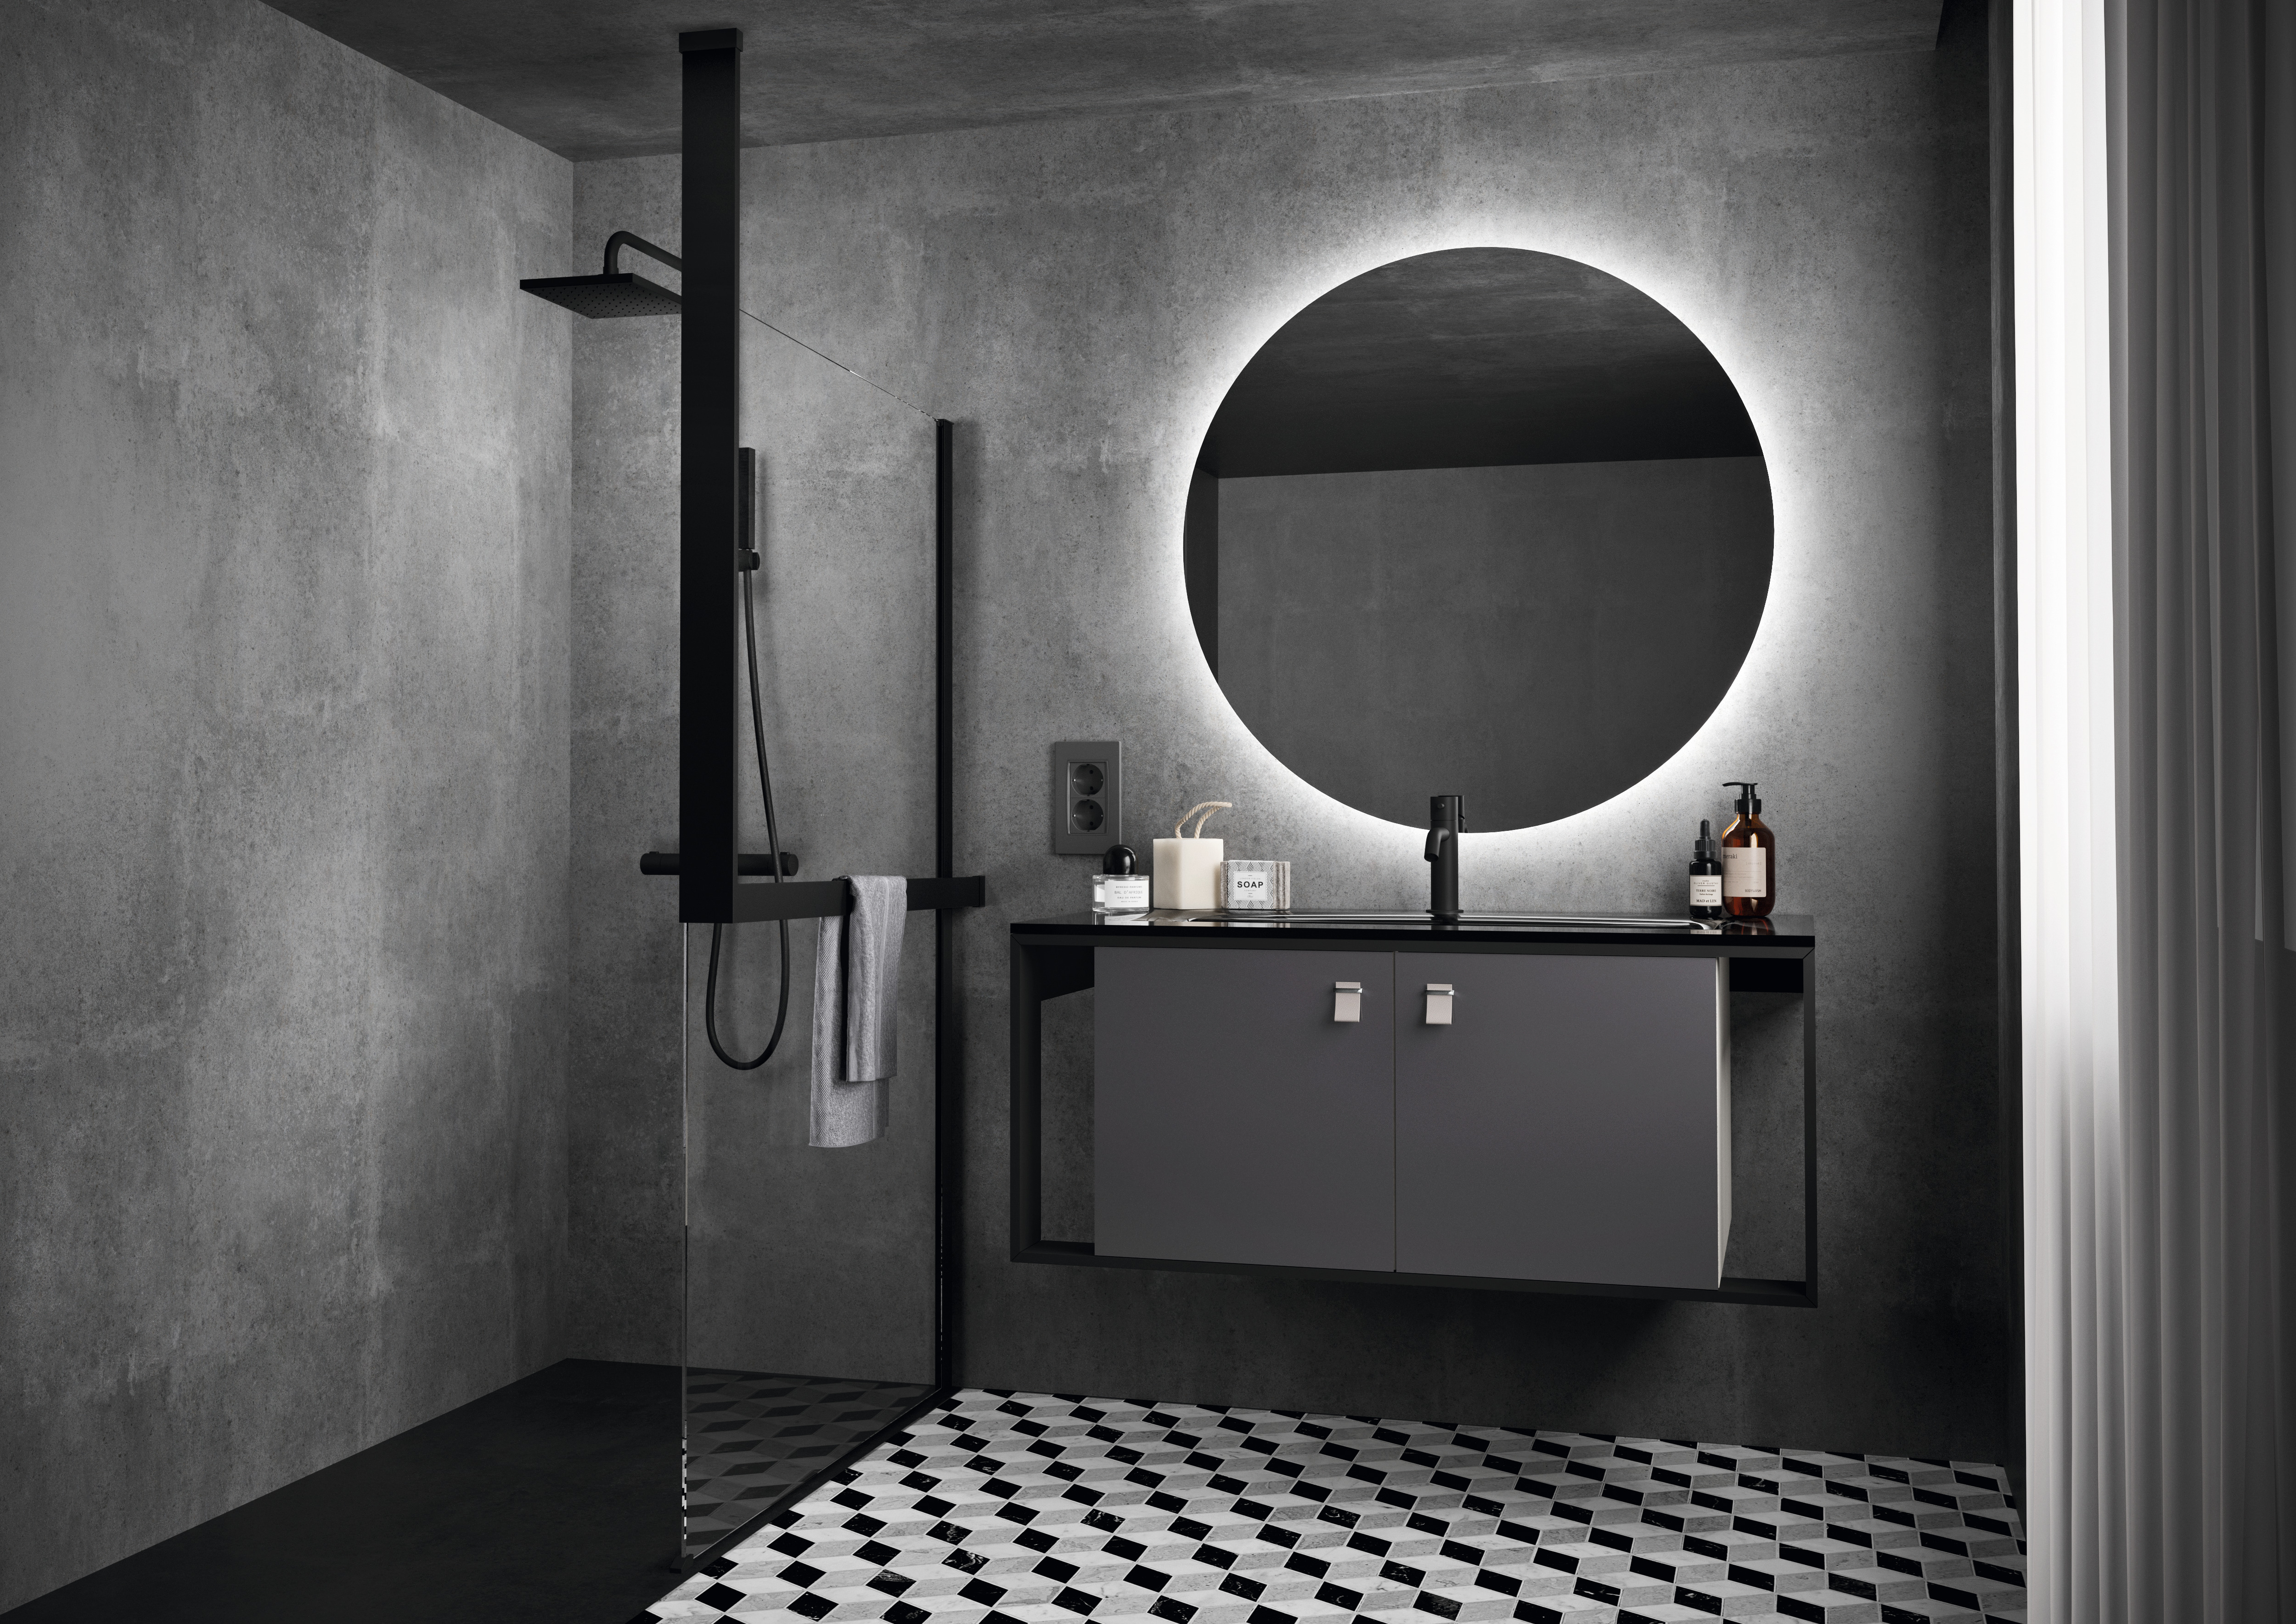 Leger Paleis natuurlijk Onze Top-7 badkamer elementen najaarsfavorieten | Baderie